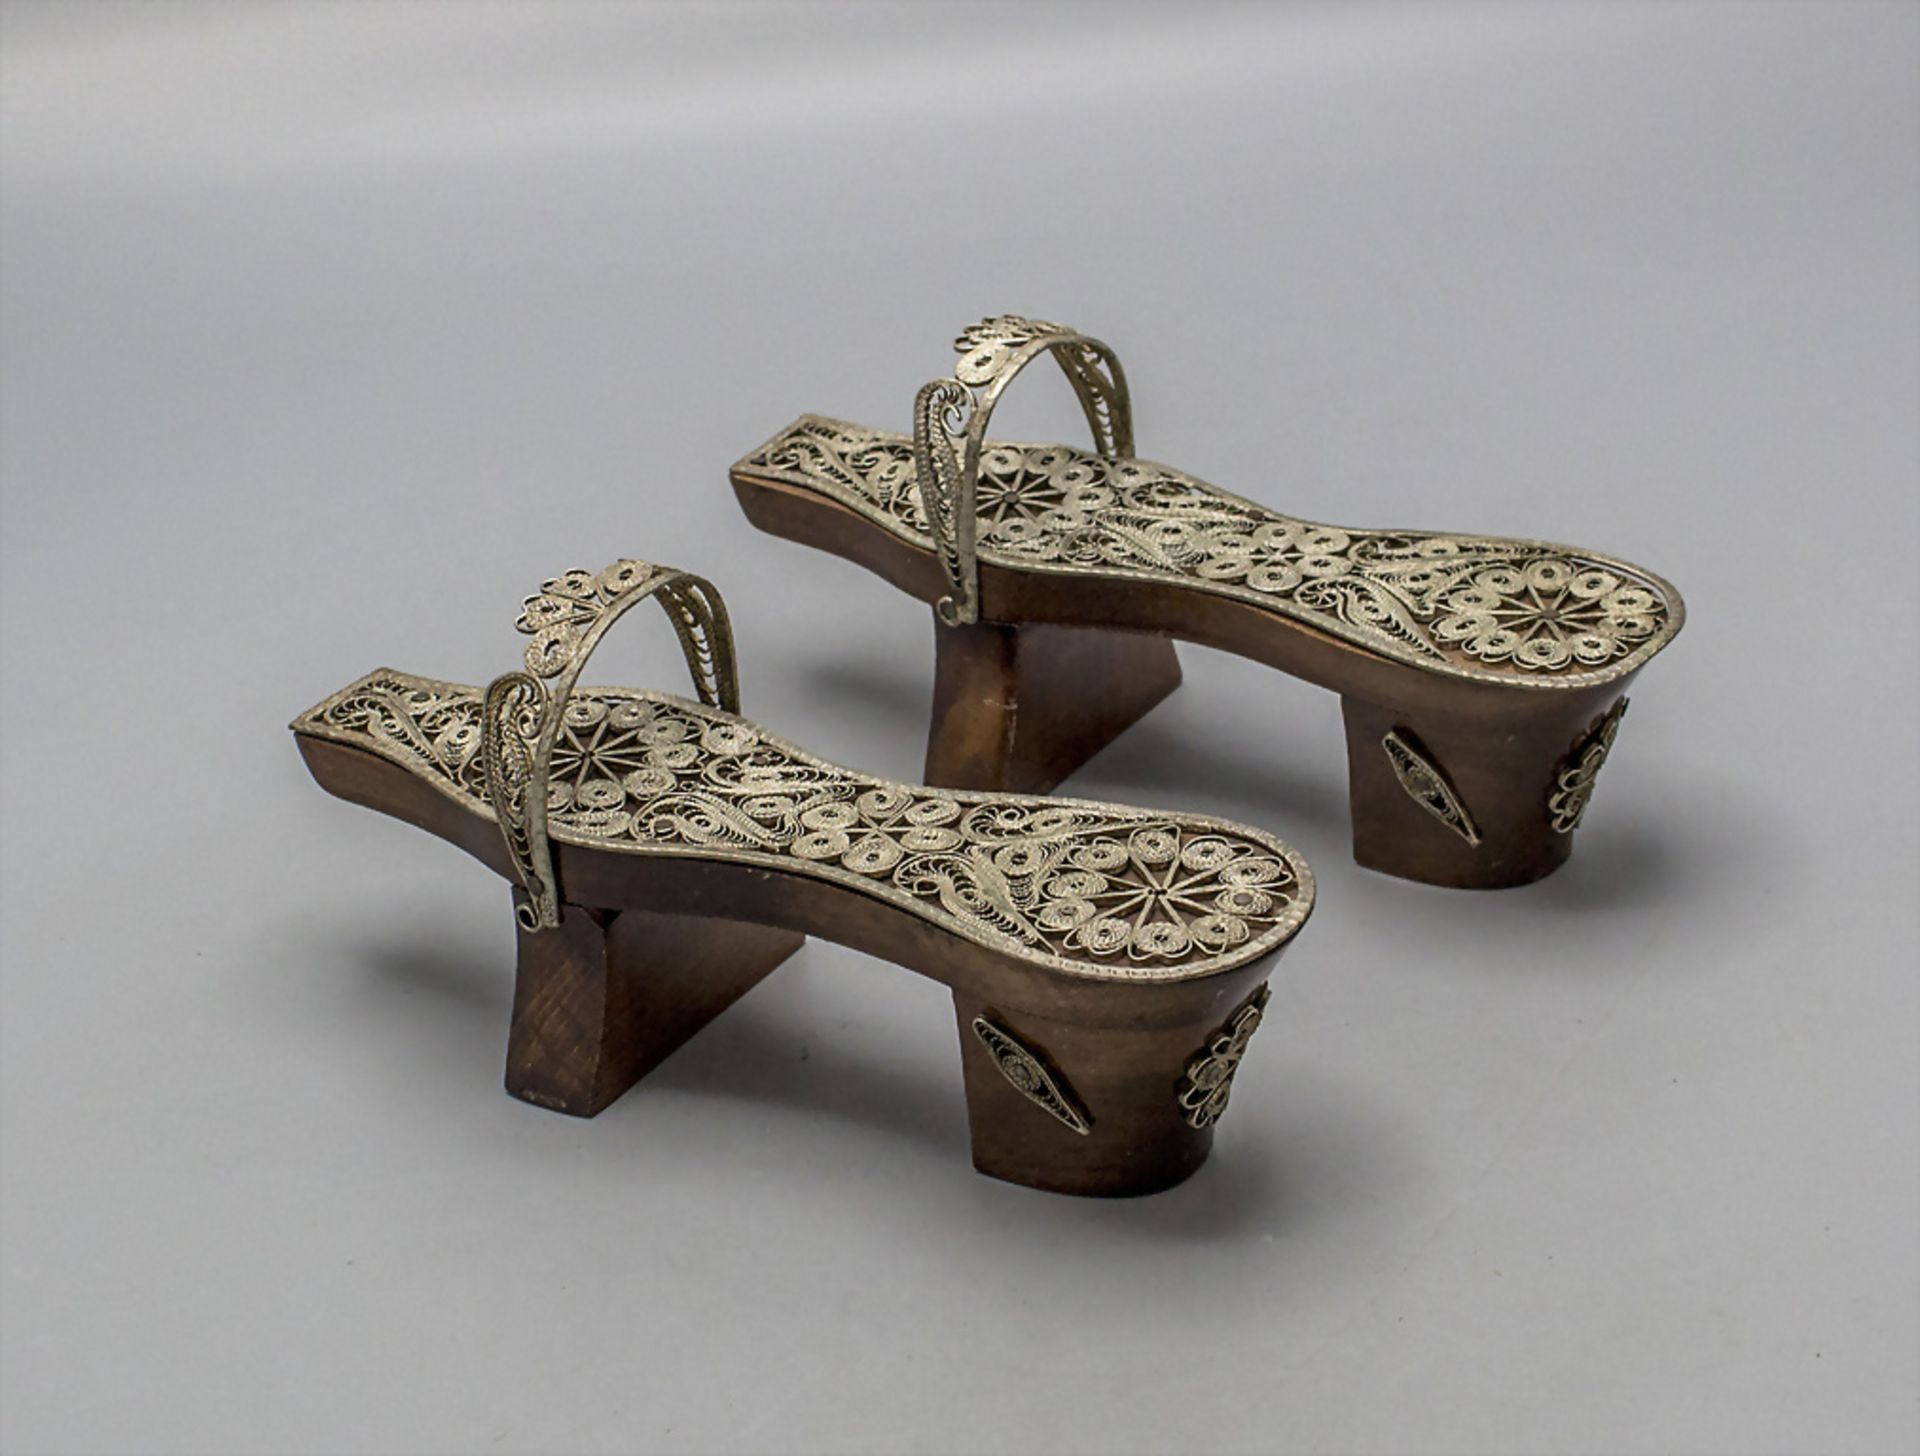 Zwei kleine Zierschuhe mit Silberfiligranarbeit / Two small decorative shoes with silver filigree